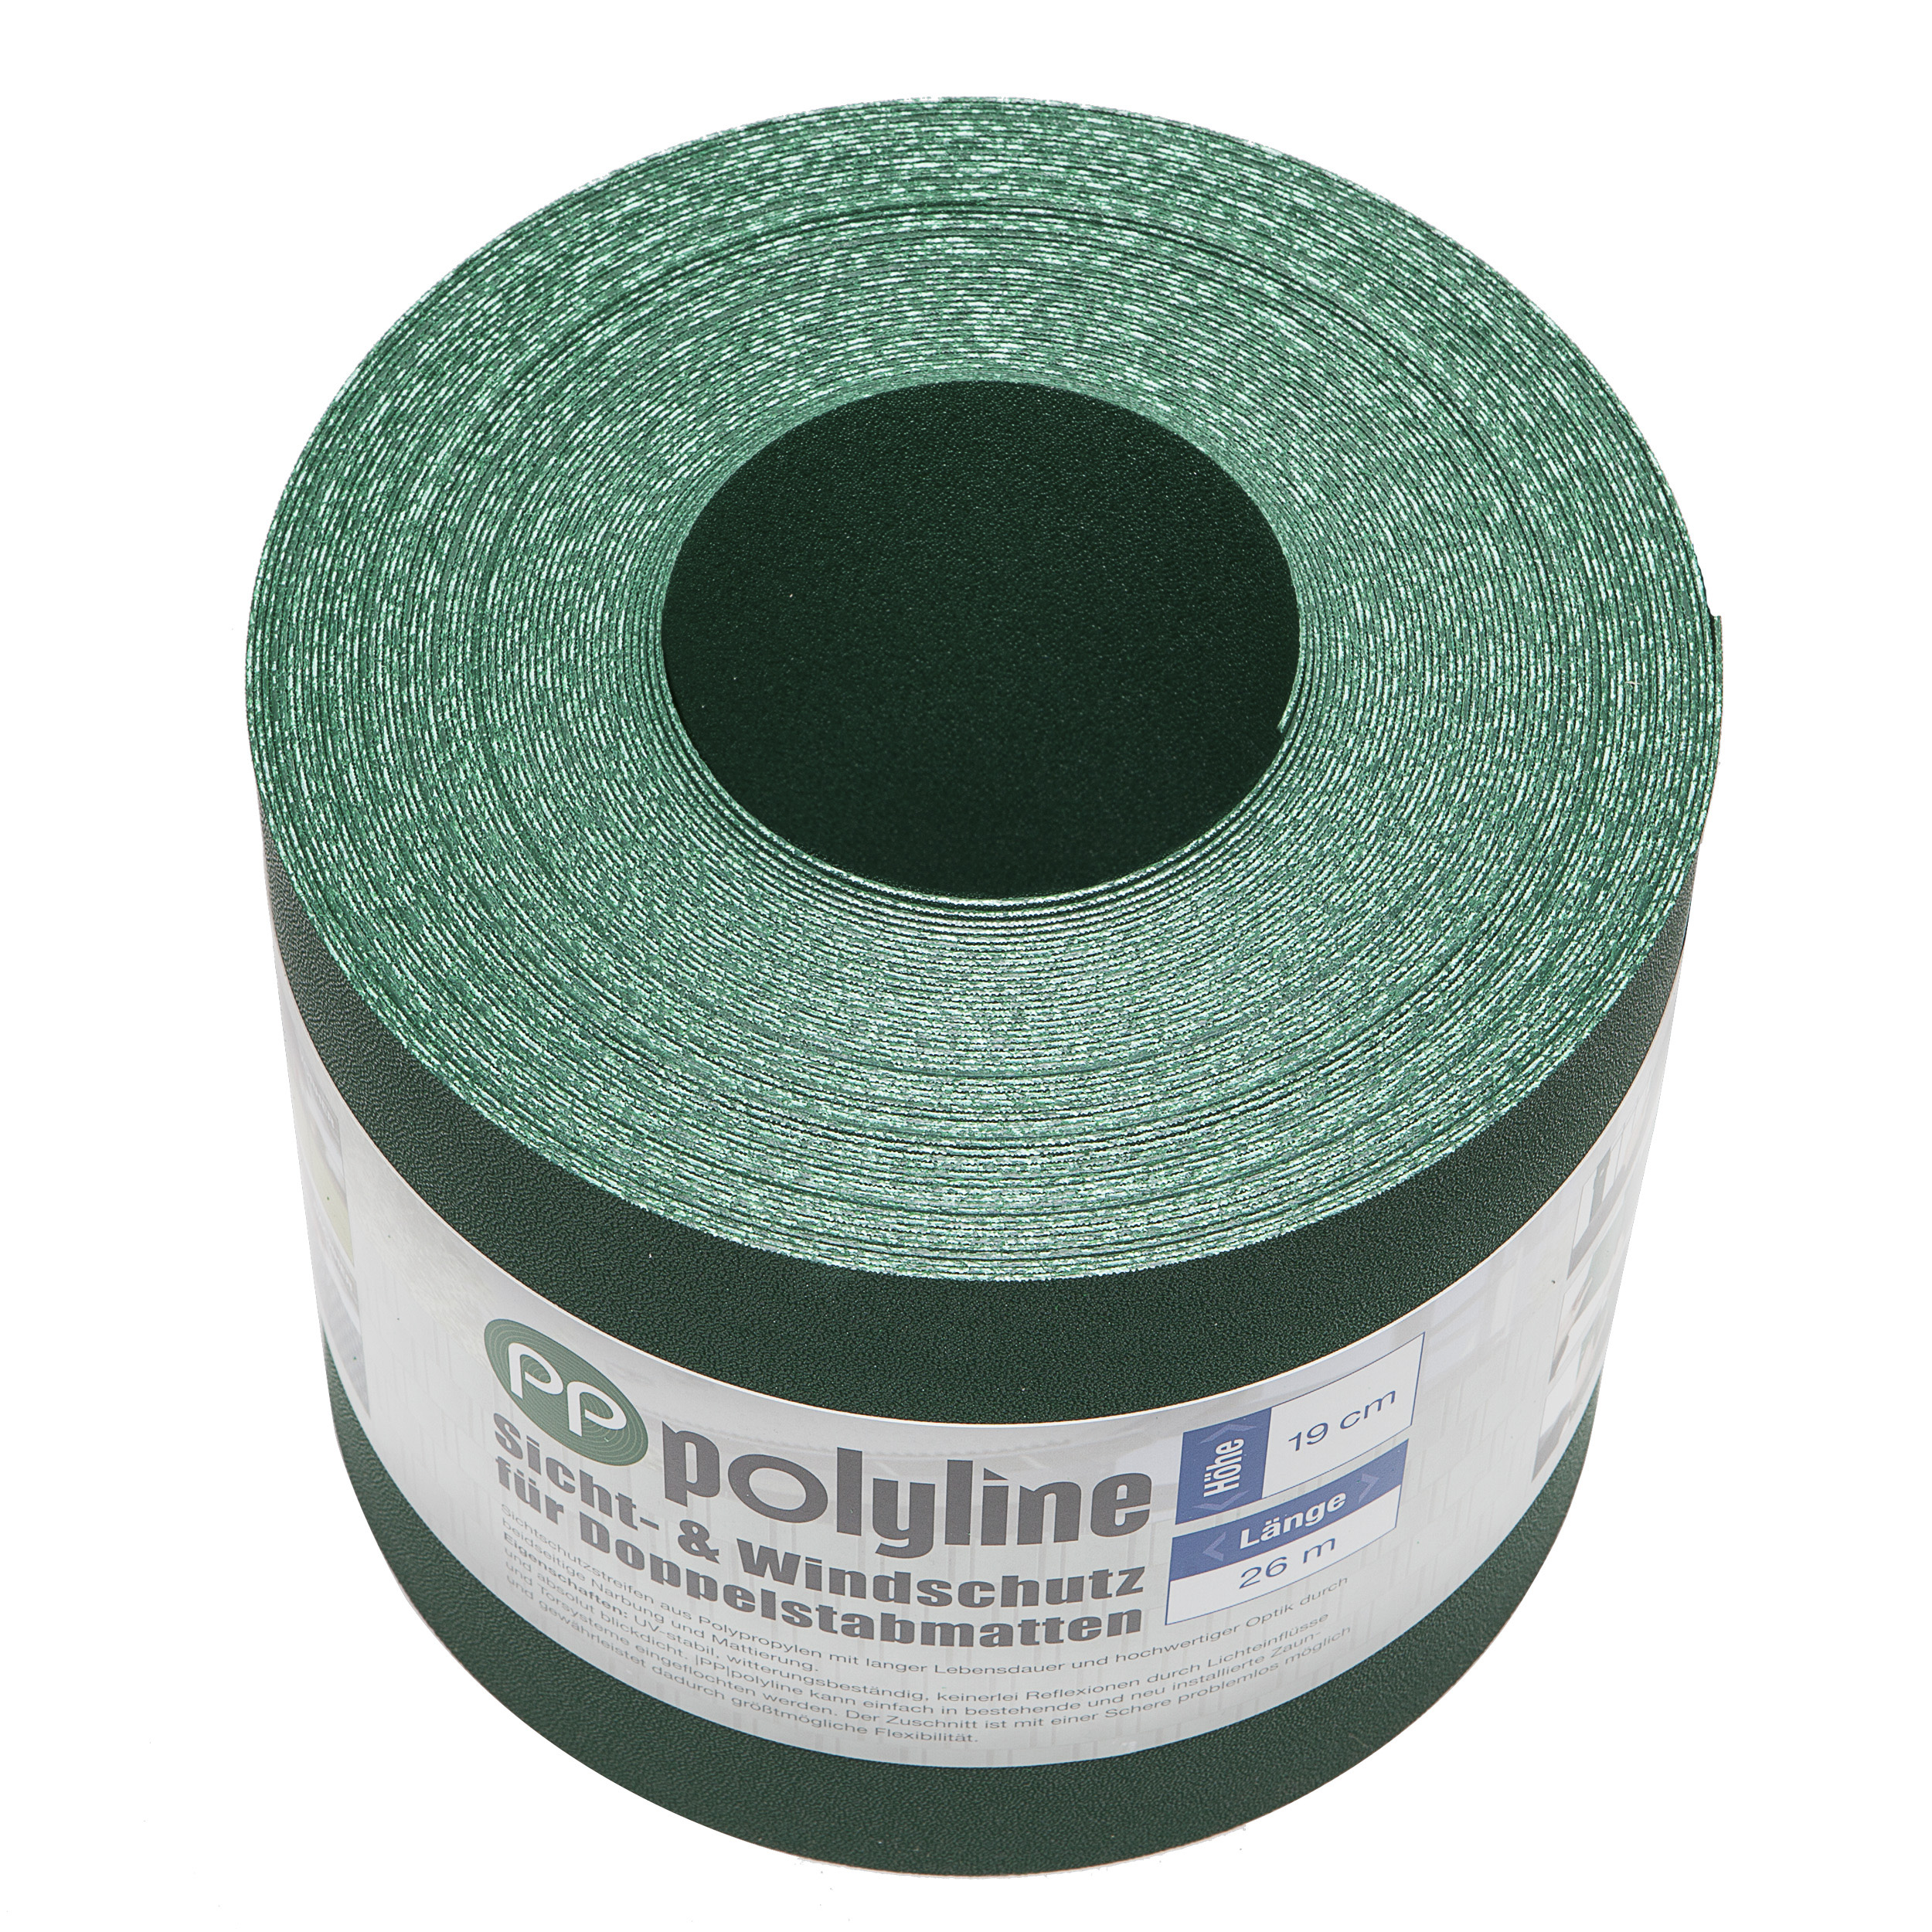  |PP| polyline / Rolle grün 26 m